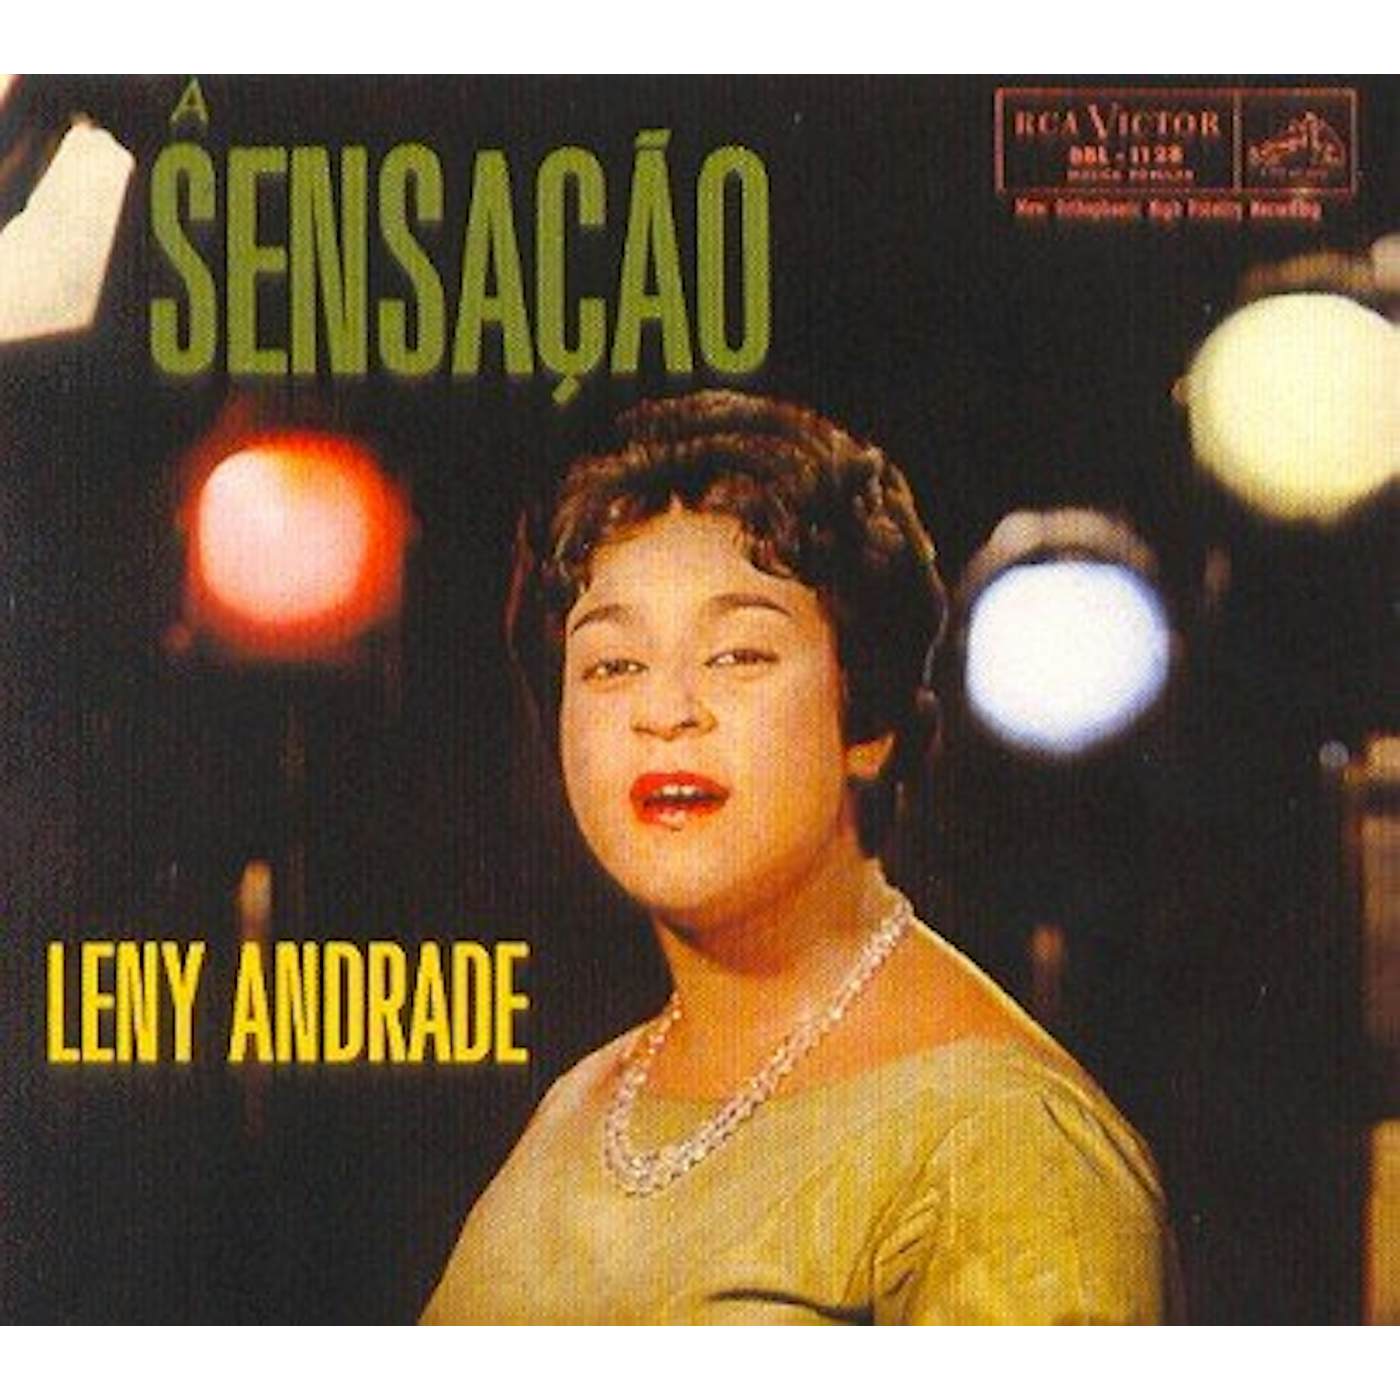 Leny Andrade SENSACAO: COLECAO 50 ANOS DE BOSSA NOVA CD